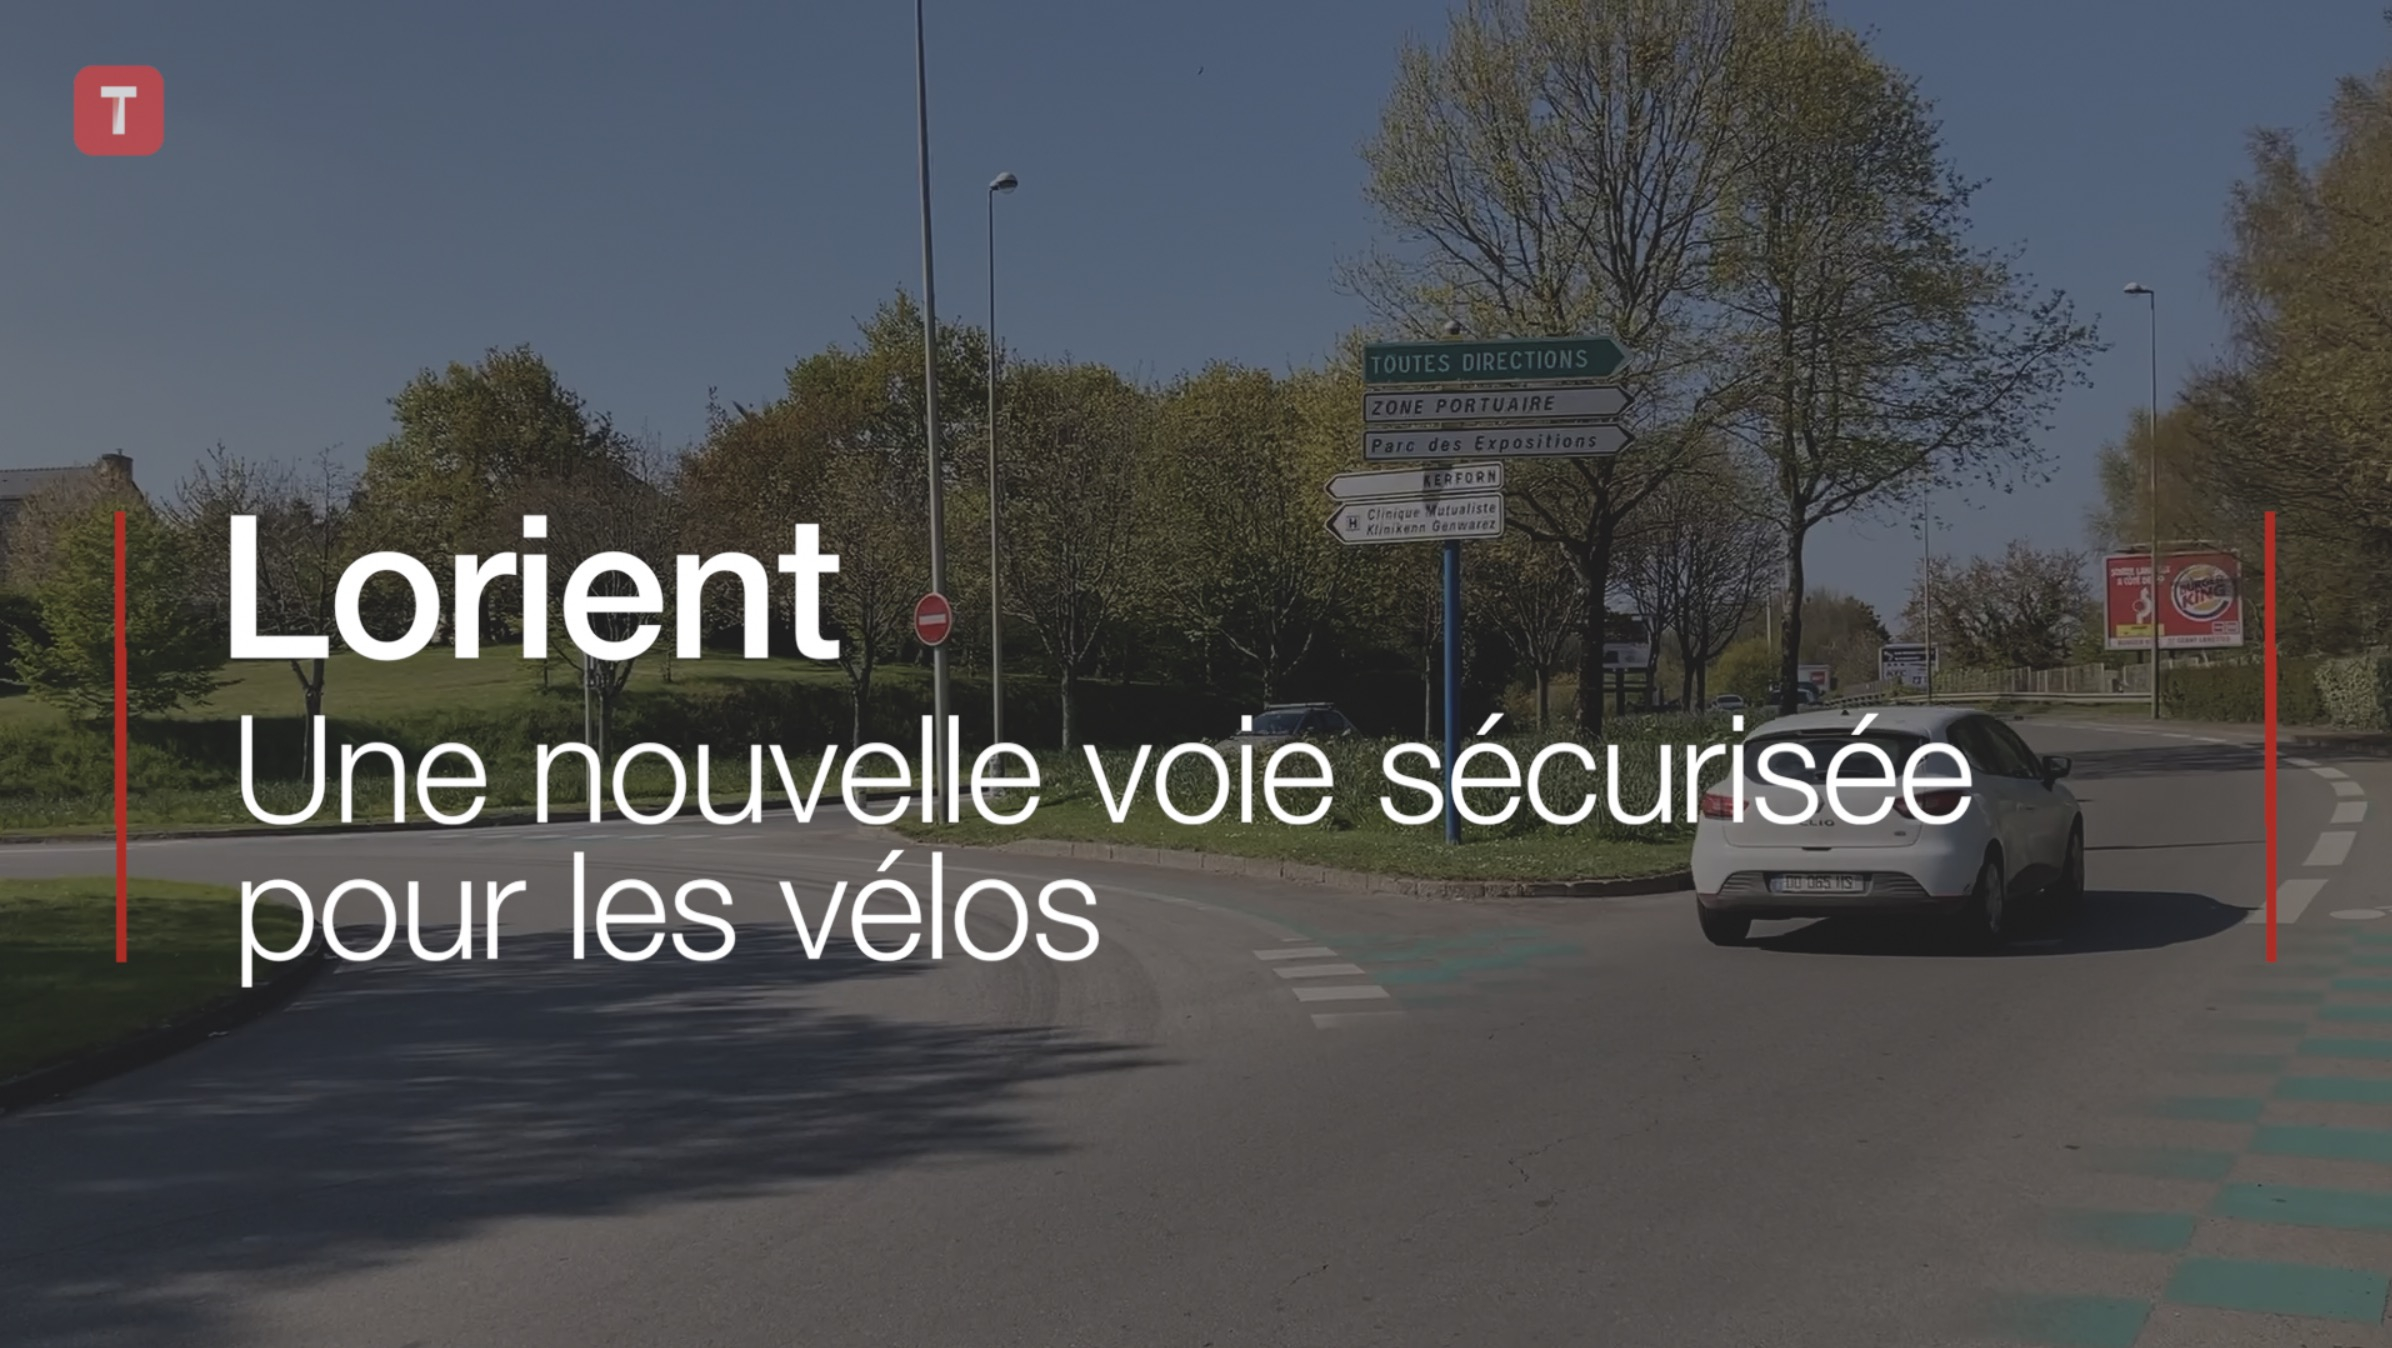 Lorient. Une nouvelle voie sécurisée pour les vélos (Le Télégramme)